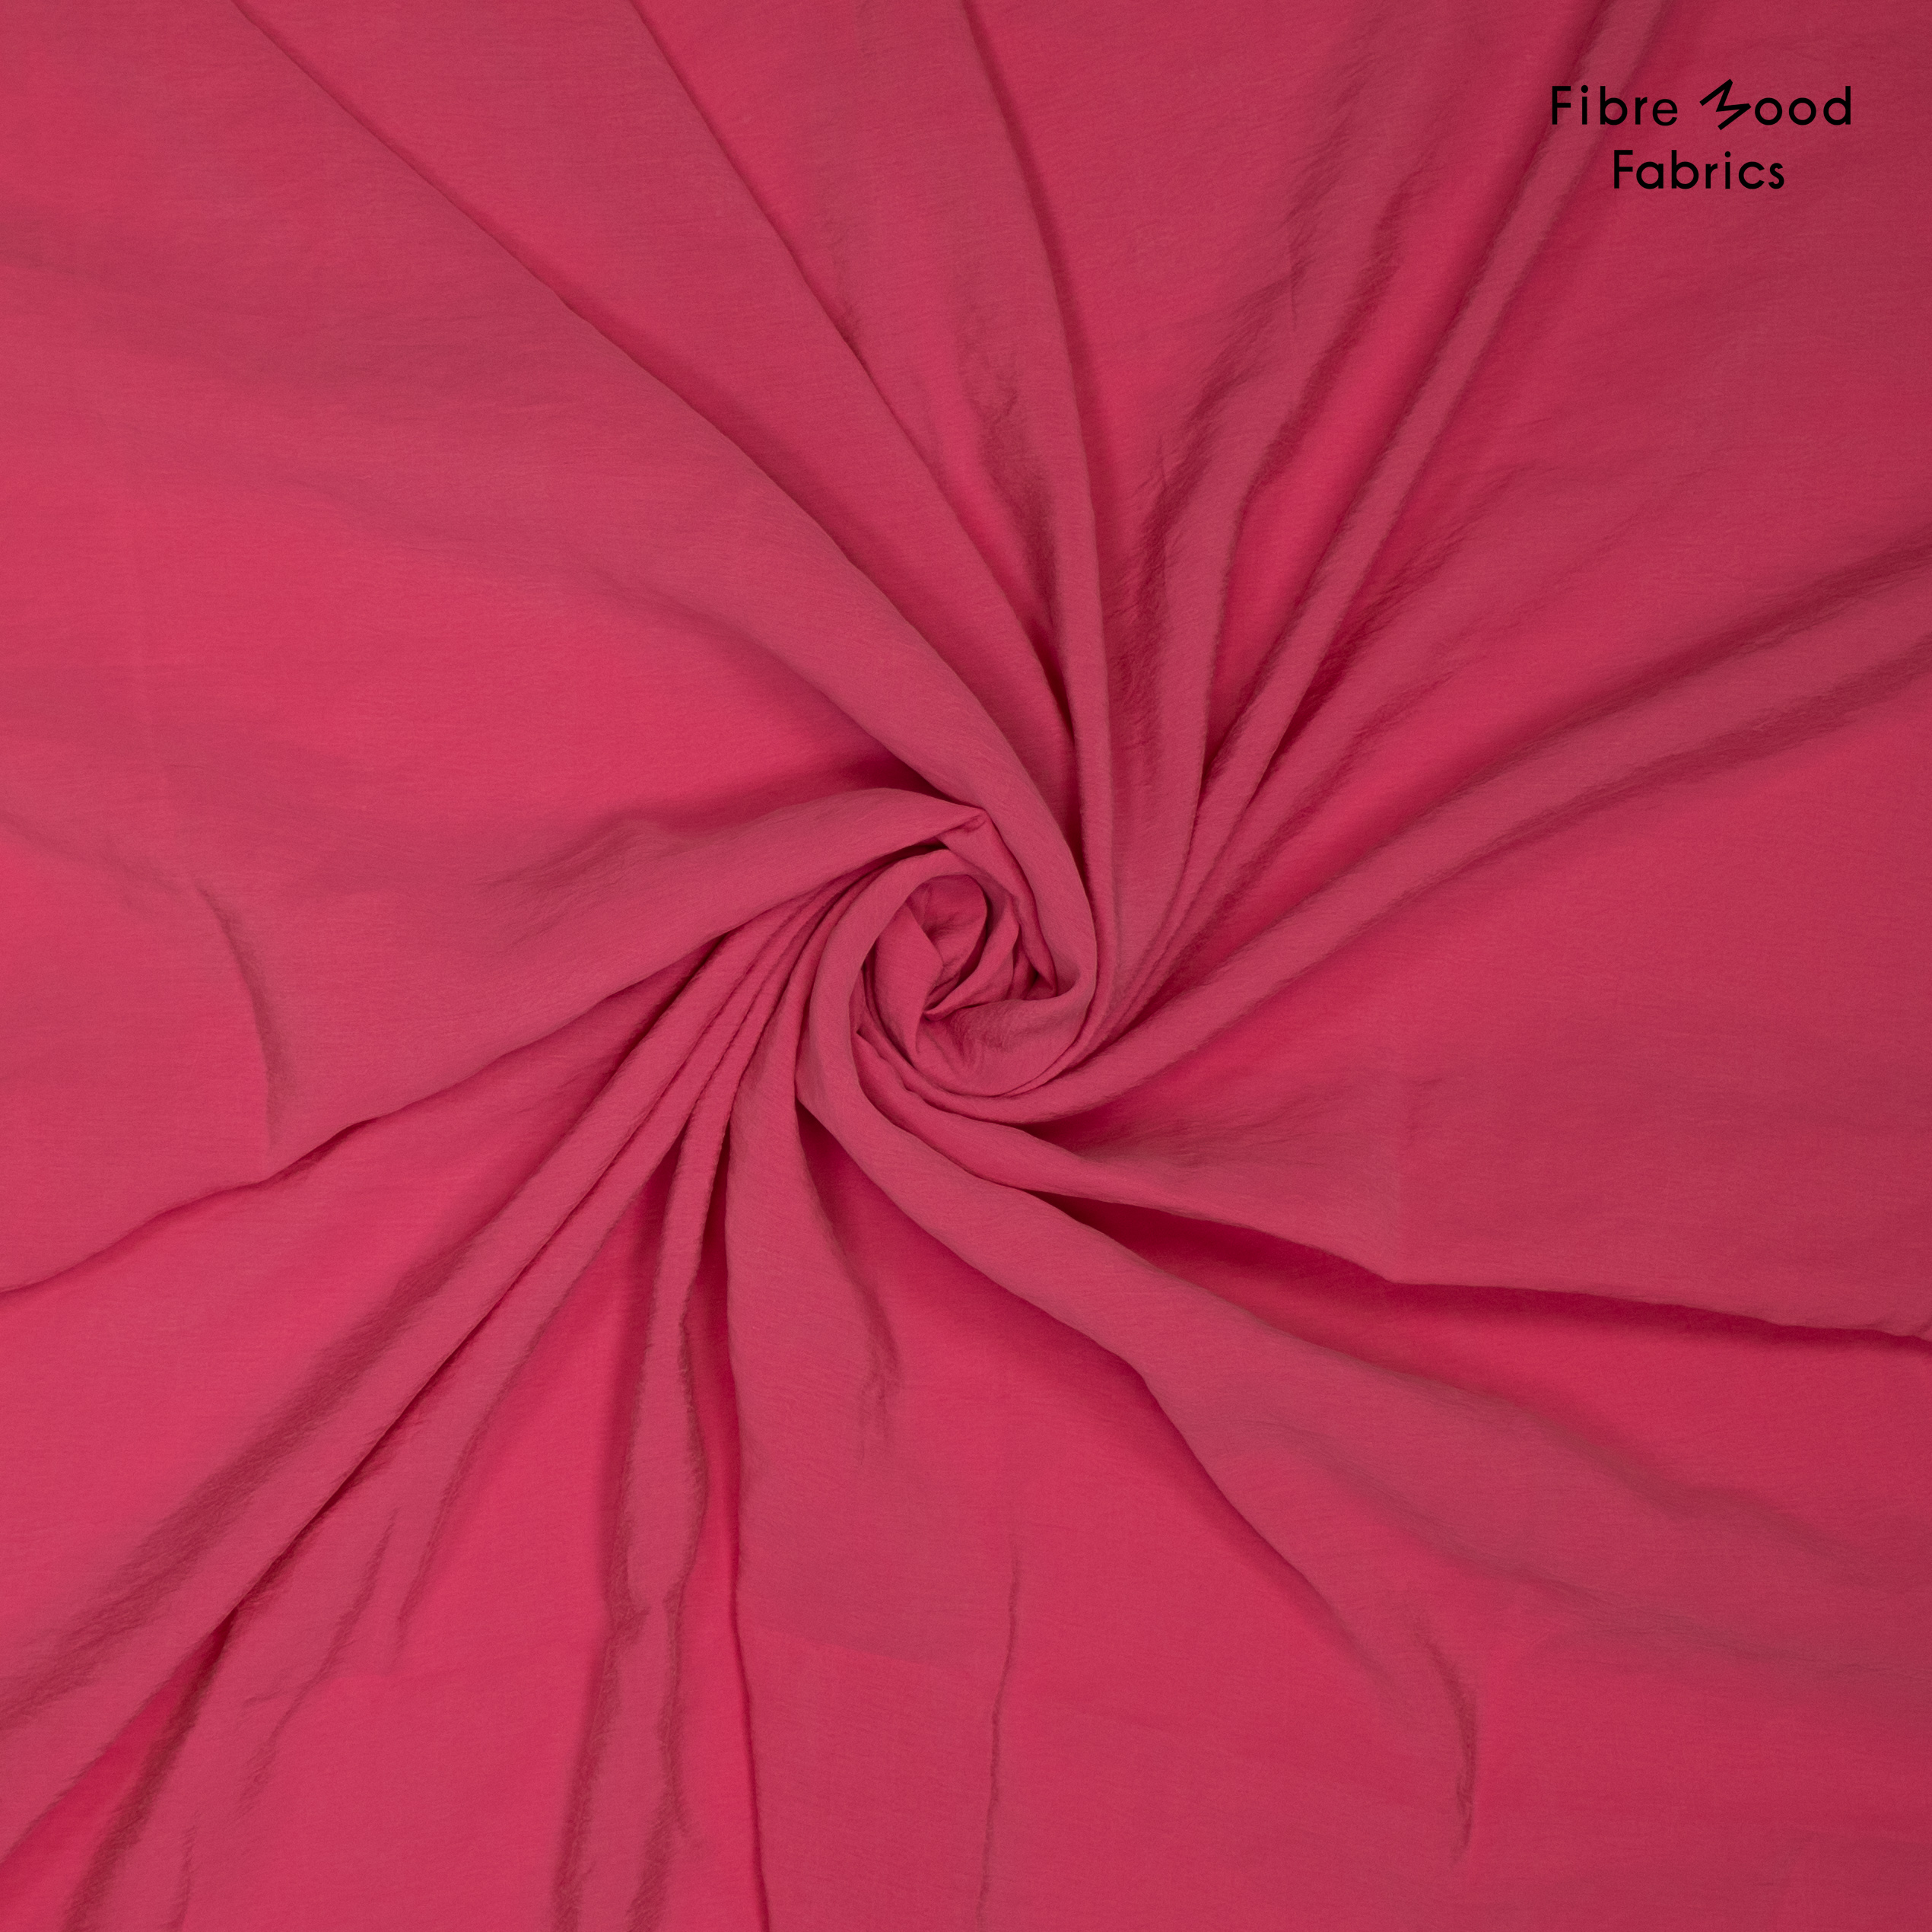 Fibre Mood "Quilla", Modalstoff, pink. Art. FM792401